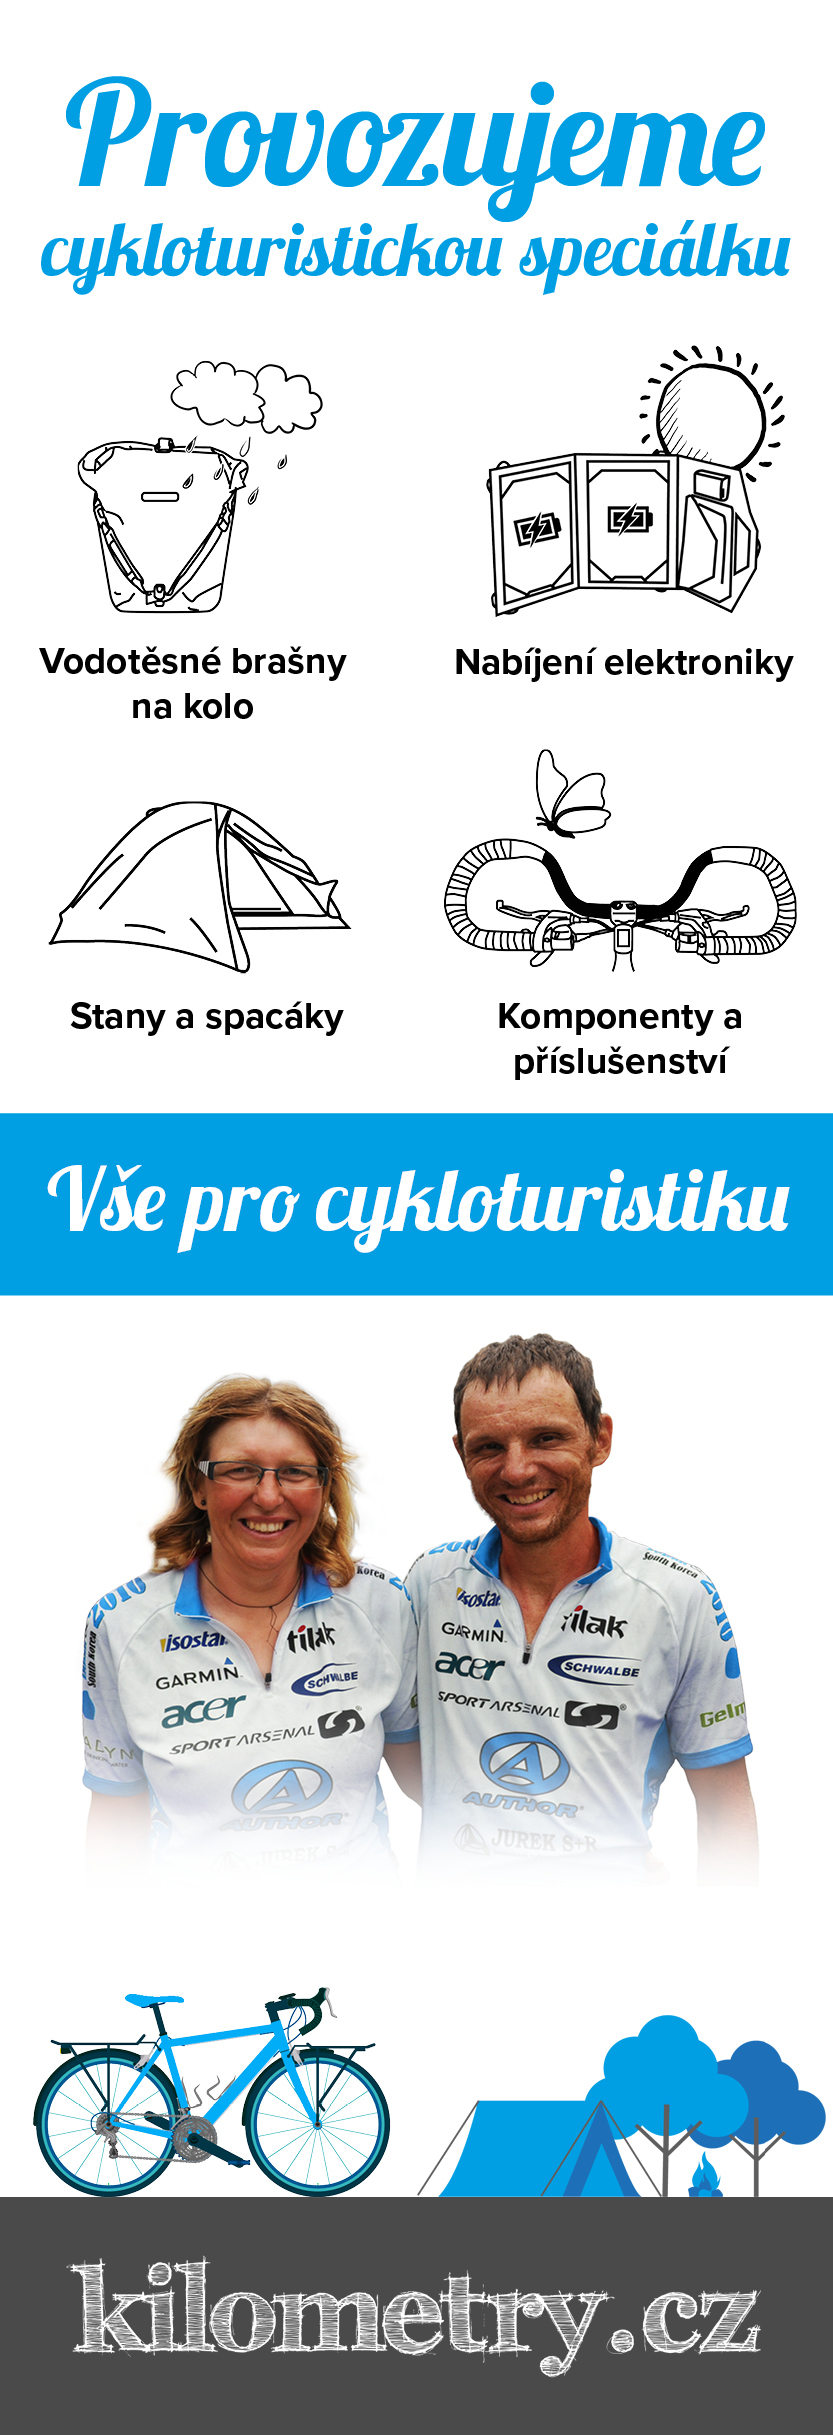 Kilometry.cz - vše pro cykloturistiku a expediční cyklistiku